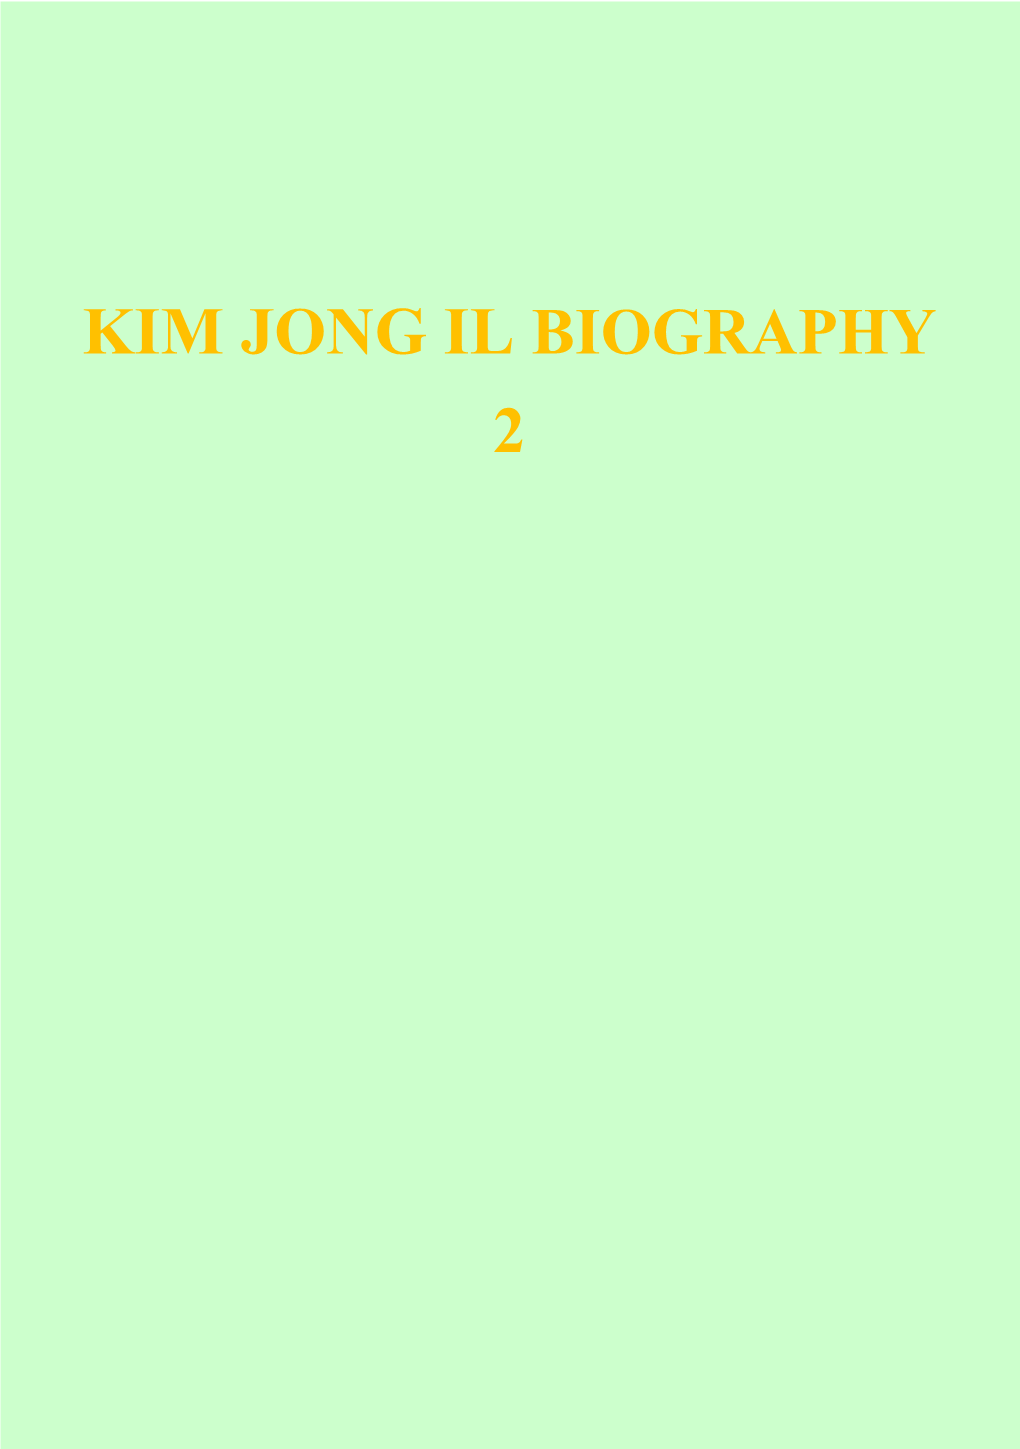 Kim Jong Il Biography 2